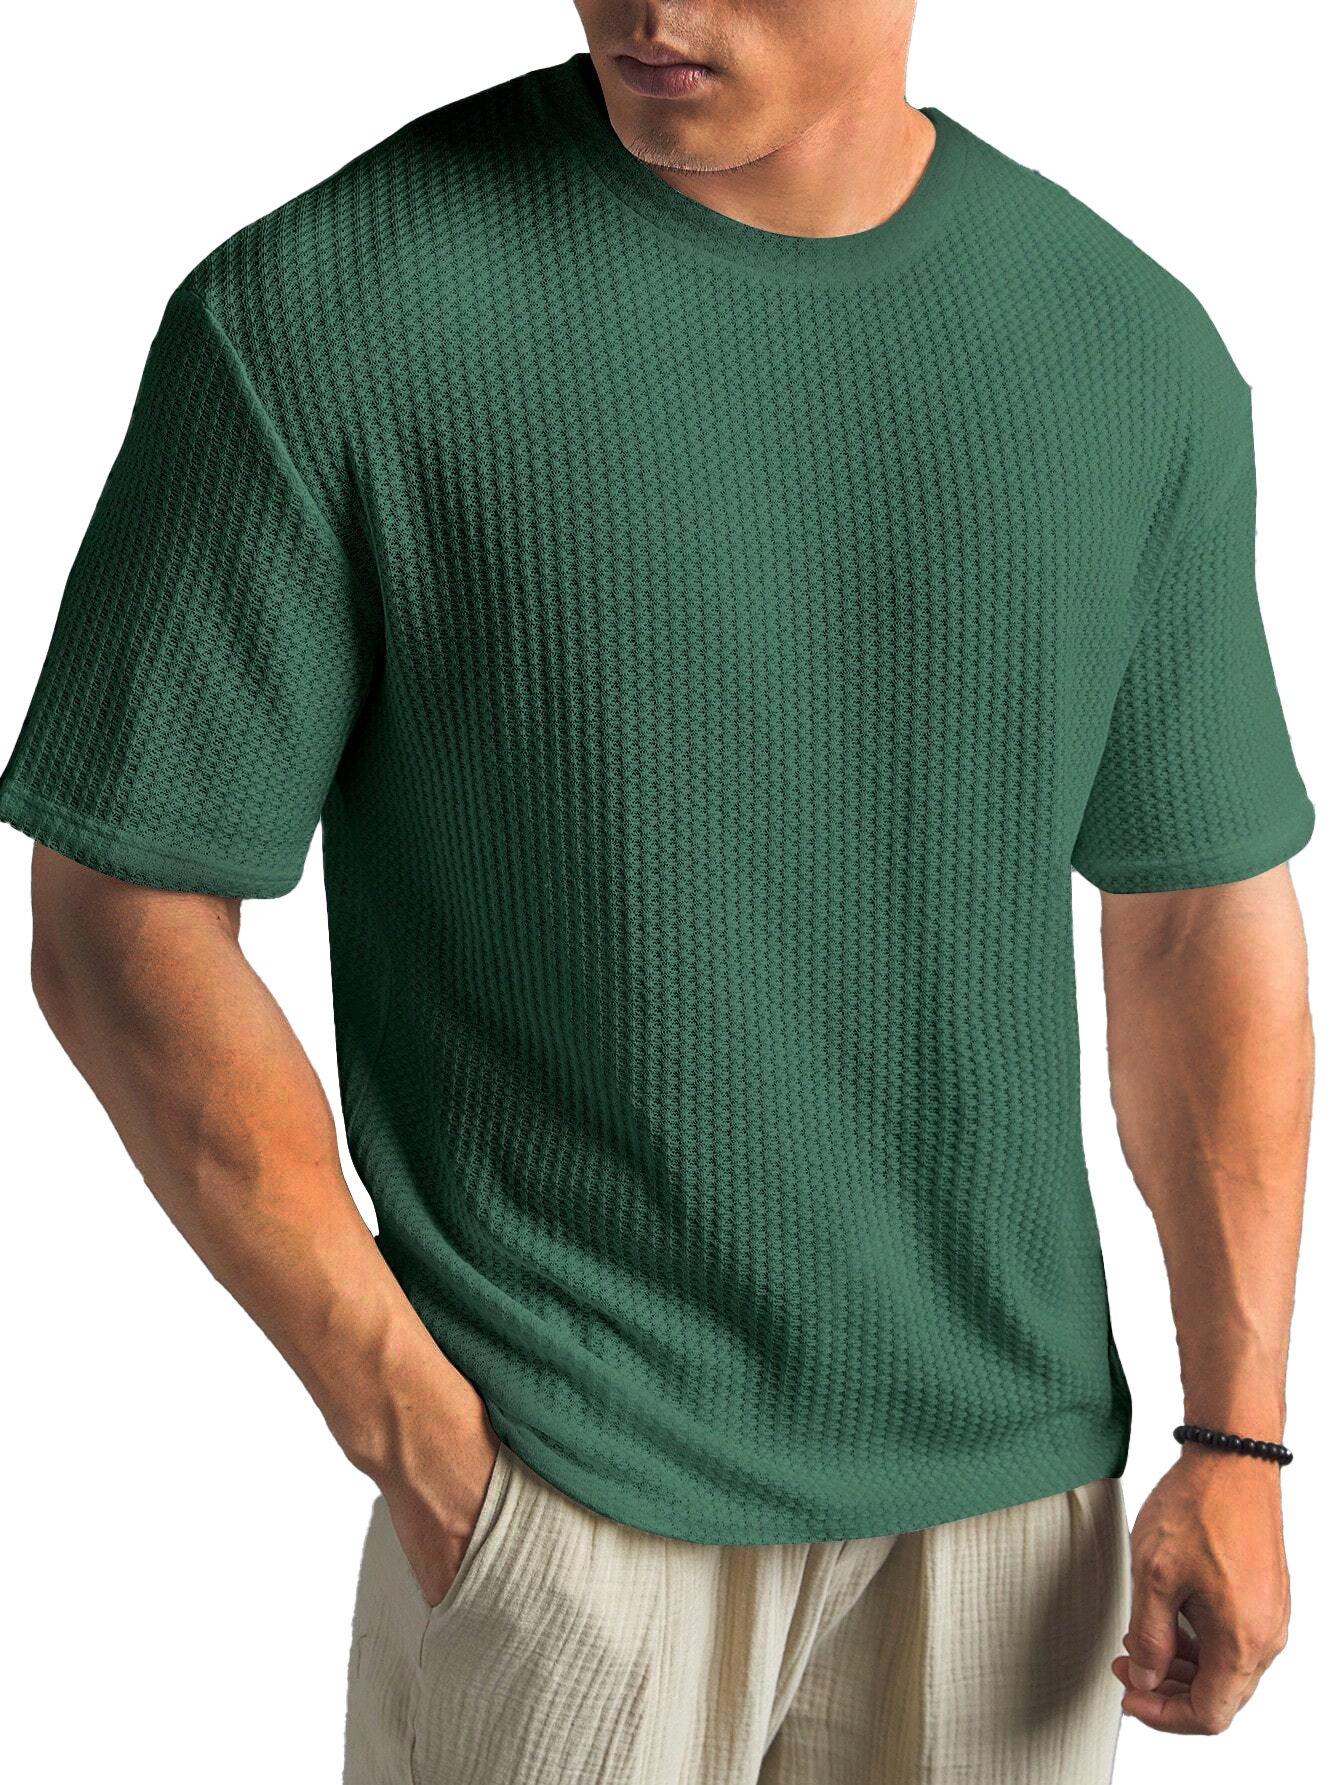 Fashionable Waffle Fabric Round Neck Short-sleeved Bottoming T-shirt